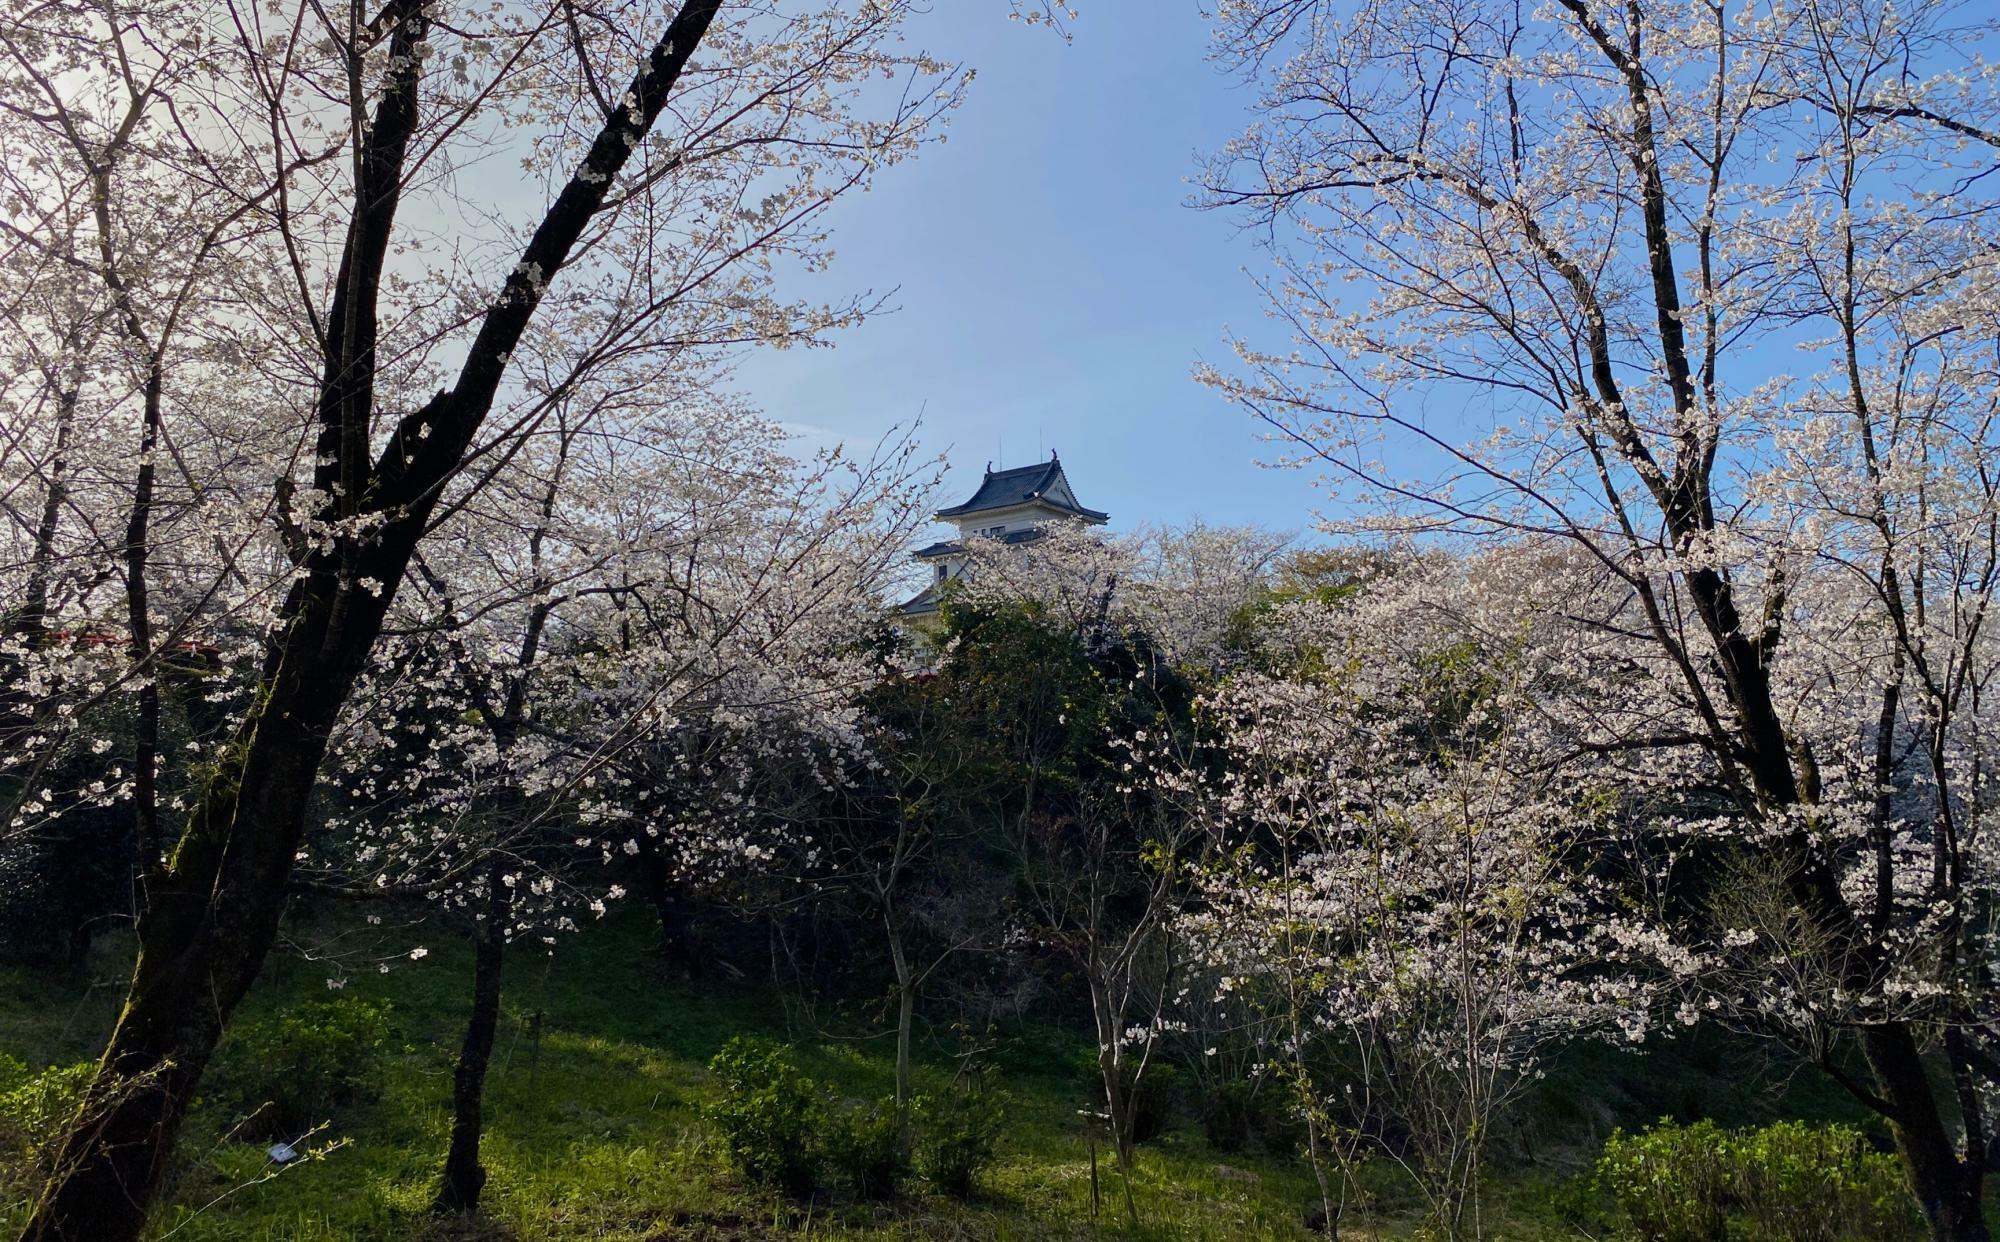 天ヶ城公園周辺一帯に桜が咲き誇っていて、普段の散歩が一層楽しめました。